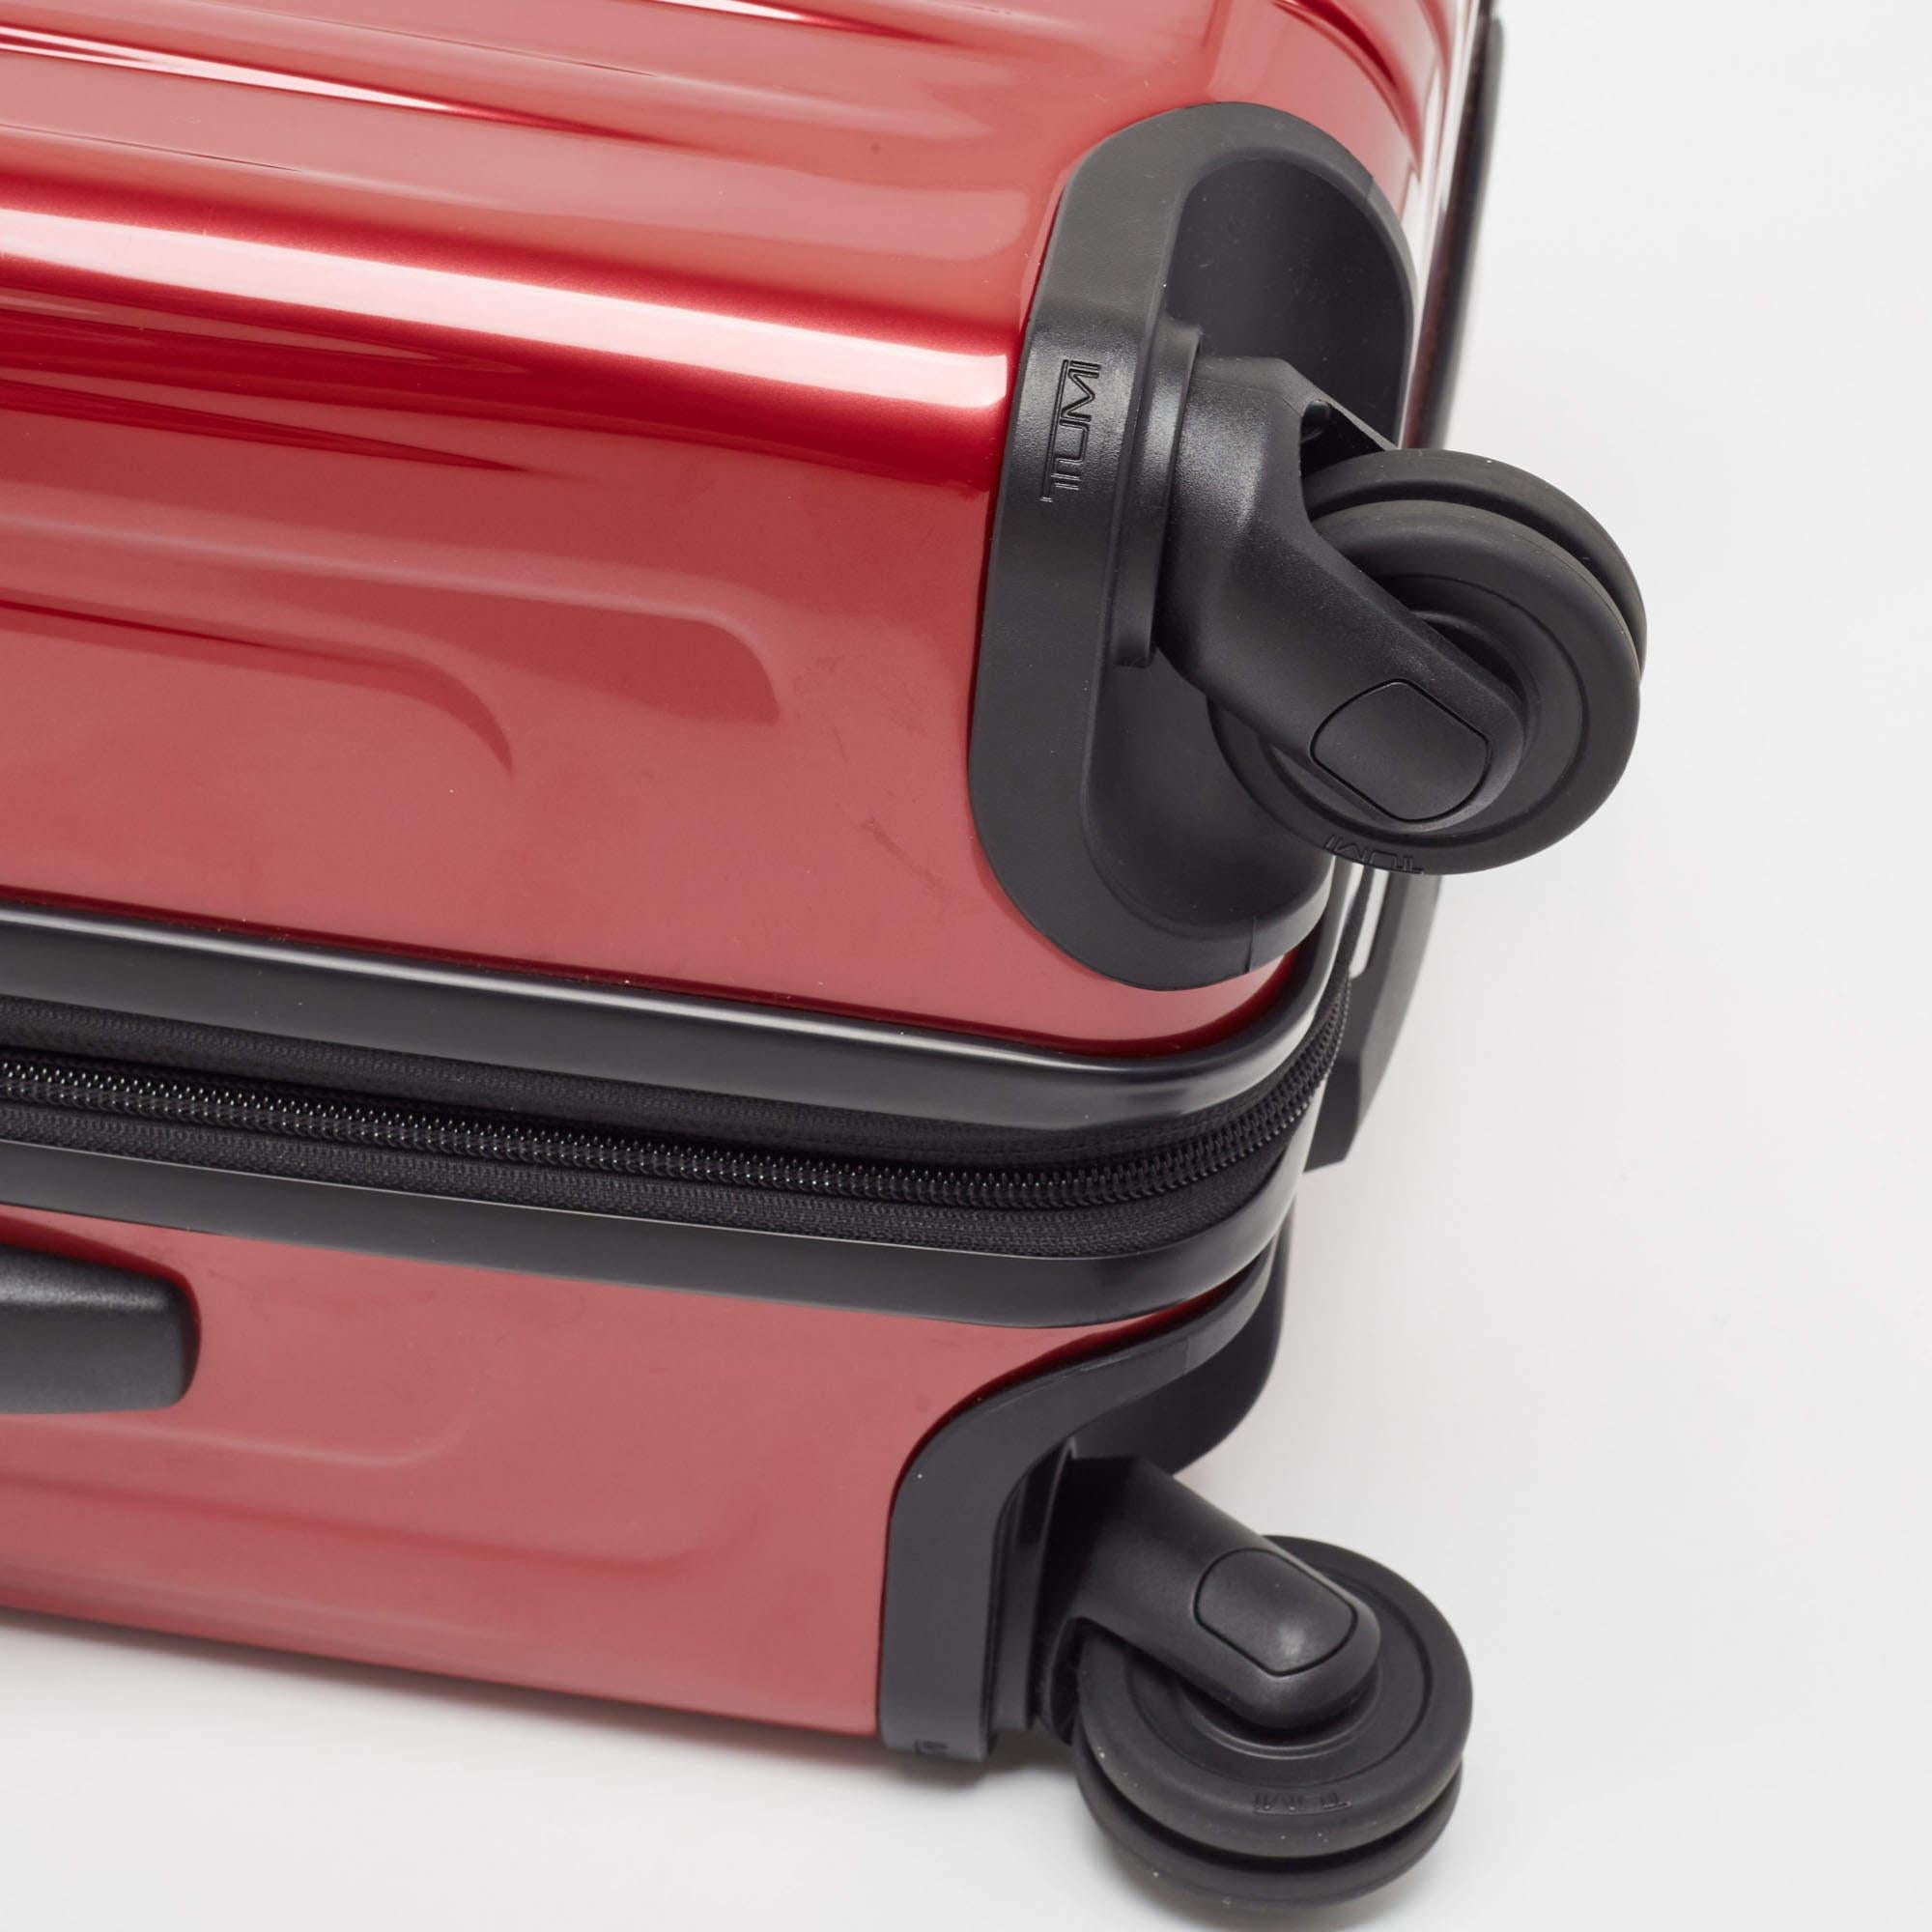 TUMI Red 4 Wheeled V4 International Expandable Carry On Luggage 3